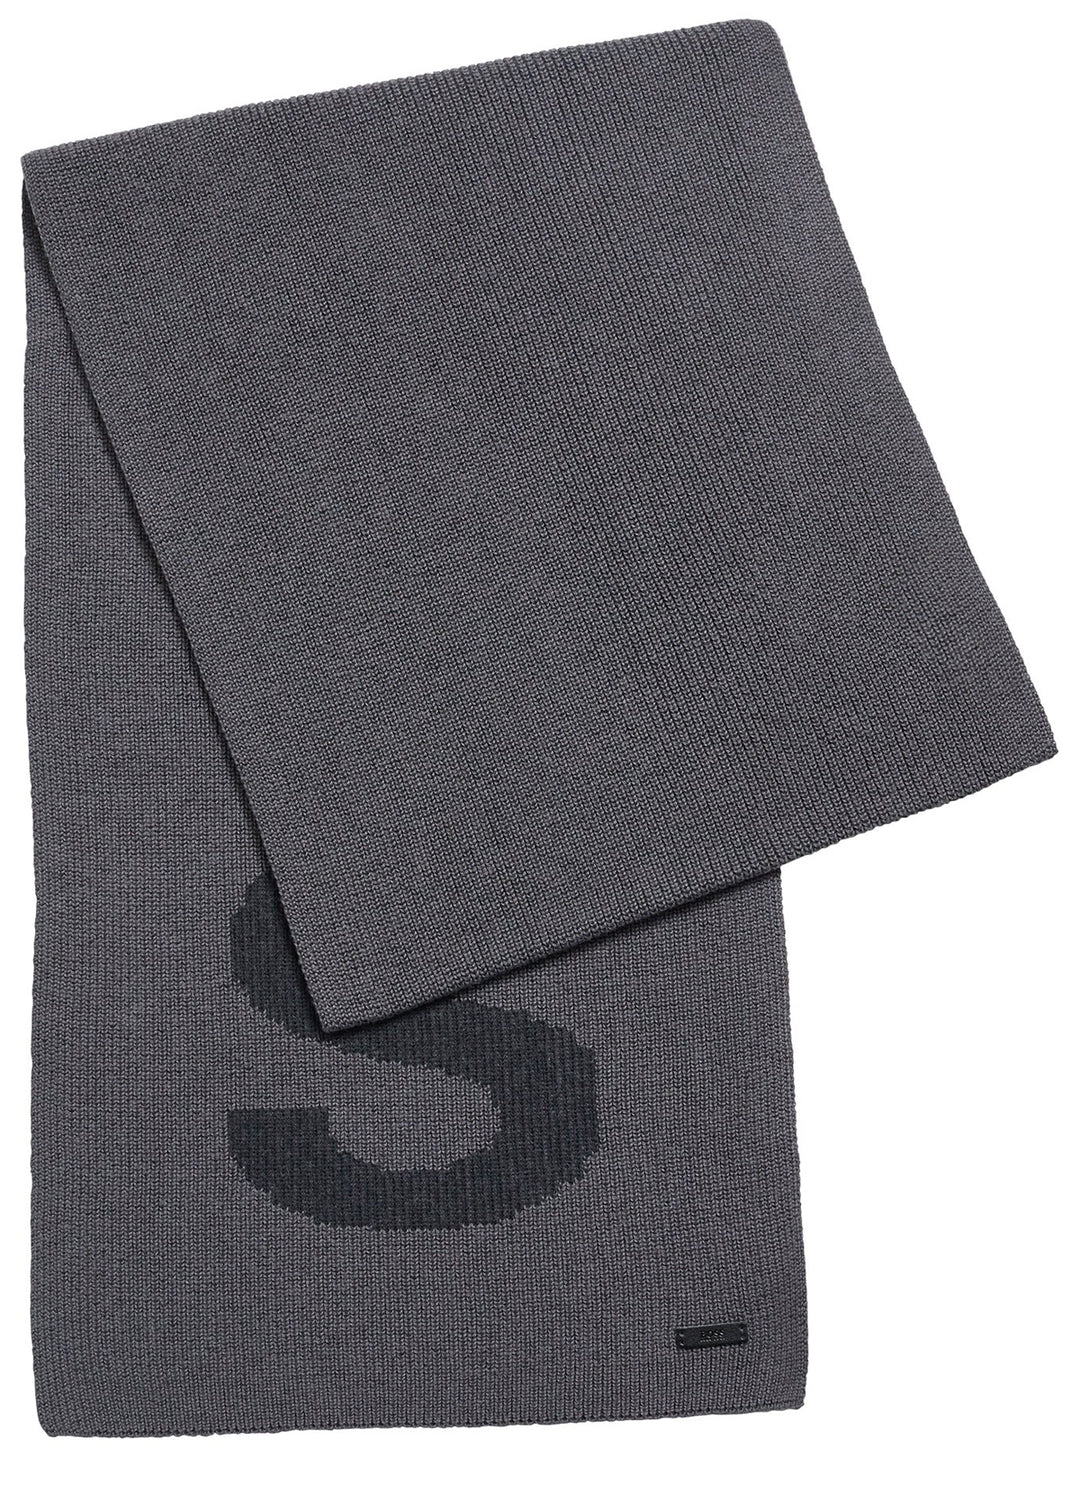 Hugo Boss Nebbio Herren Schal aus Baumwolle Mit Logo Grau